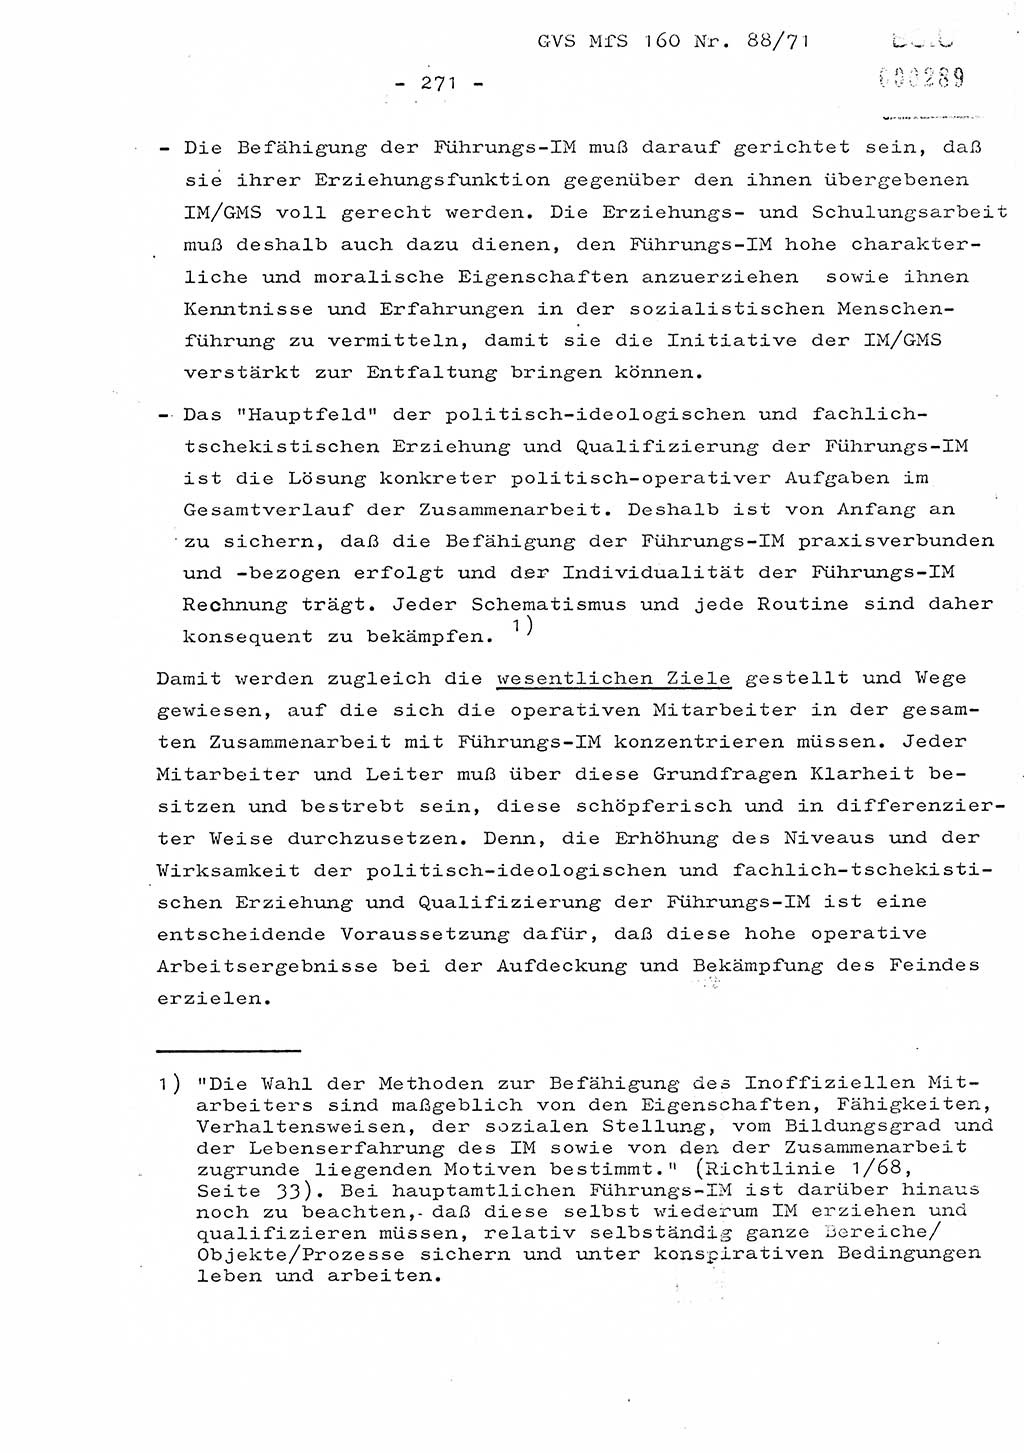 Dissertation Oberstleutnant Josef Schwarz (BV Schwerin), Major Fritz Amm (JHS), Hauptmann Peter Gräßler (JHS), Ministerium für Staatssicherheit (MfS) [Deutsche Demokratische Republik (DDR)], Juristische Hochschule (JHS), Geheime Verschlußsache (GVS) 160-88/71, Potsdam 1972, Seite 271 (Diss. MfS DDR JHS GVS 160-88/71 1972, S. 271)